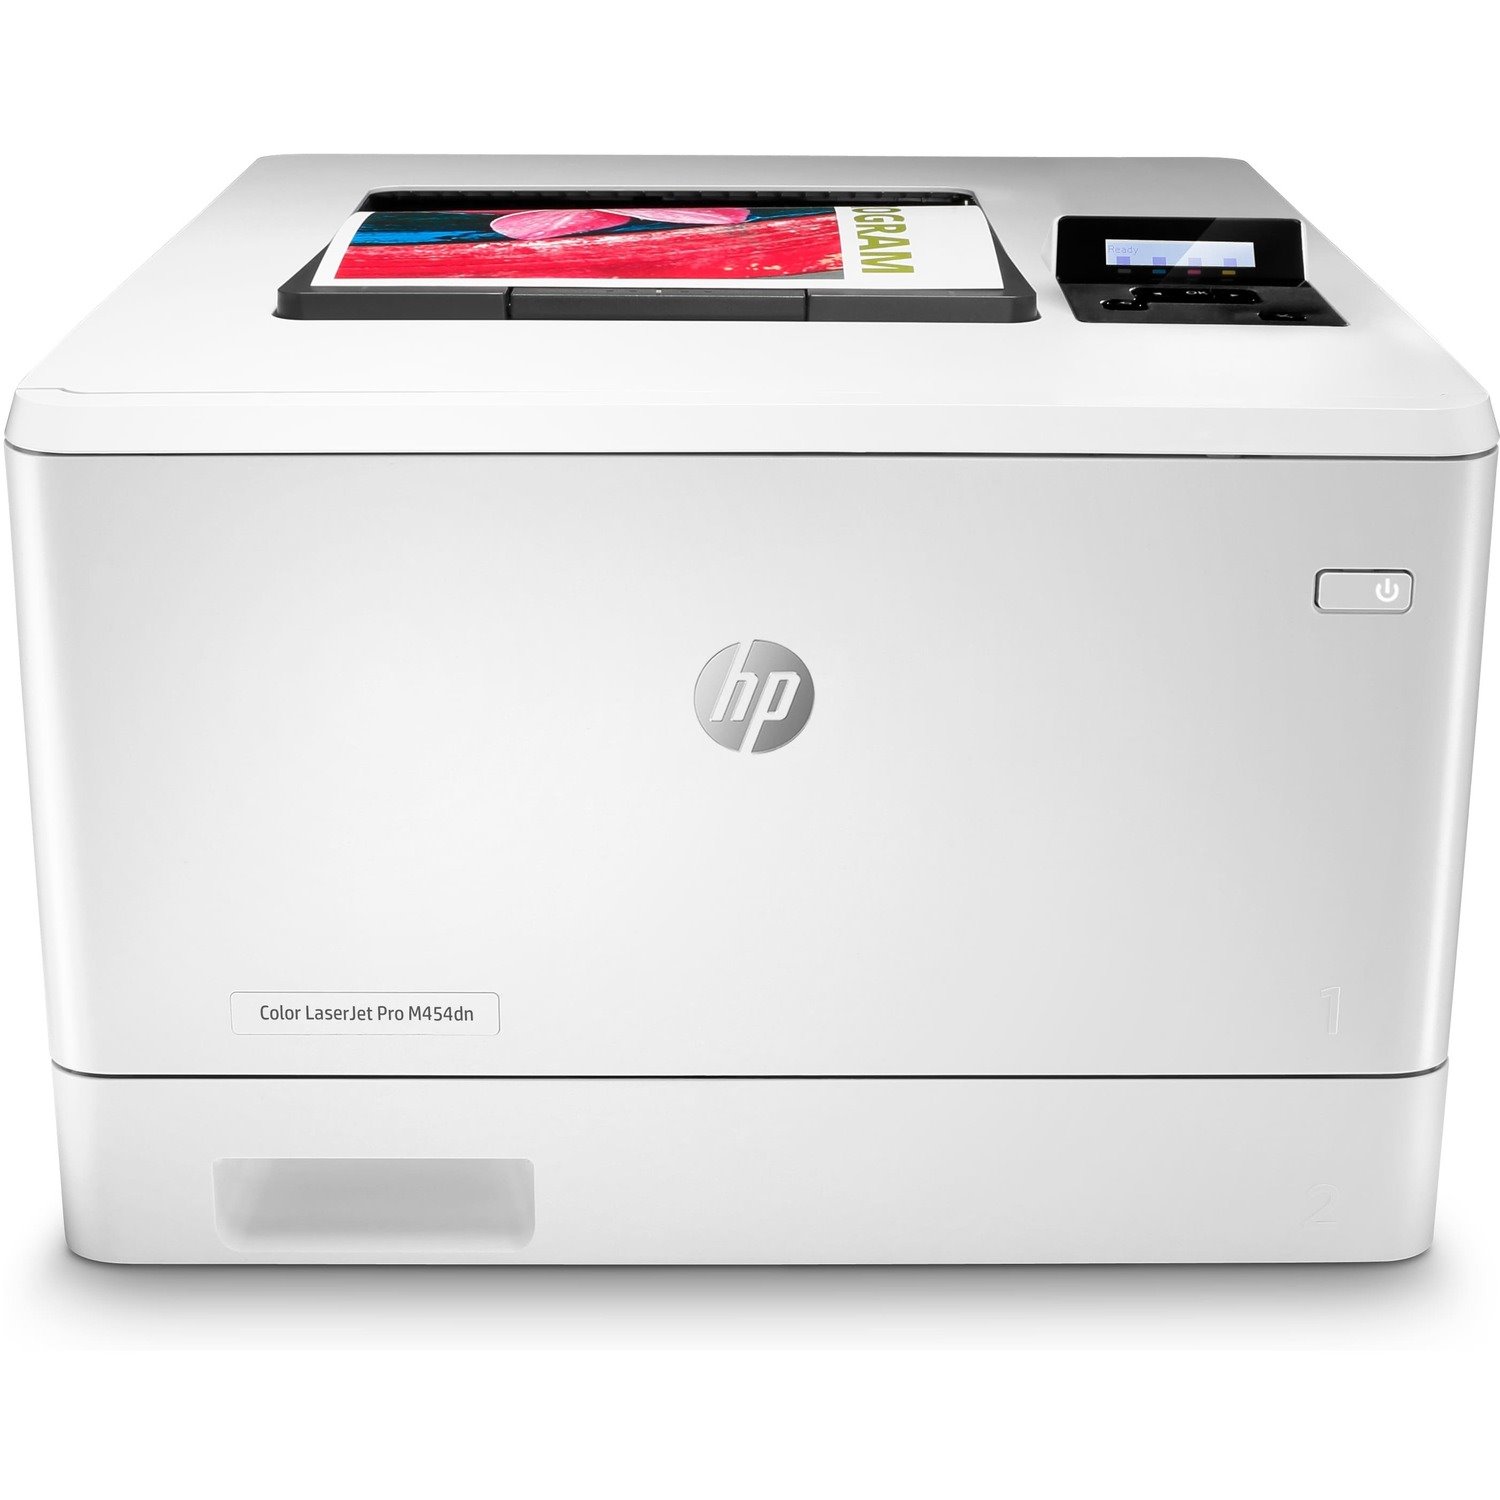 HP LaserJet Pro M454dn Desktop Laser Printer - Color